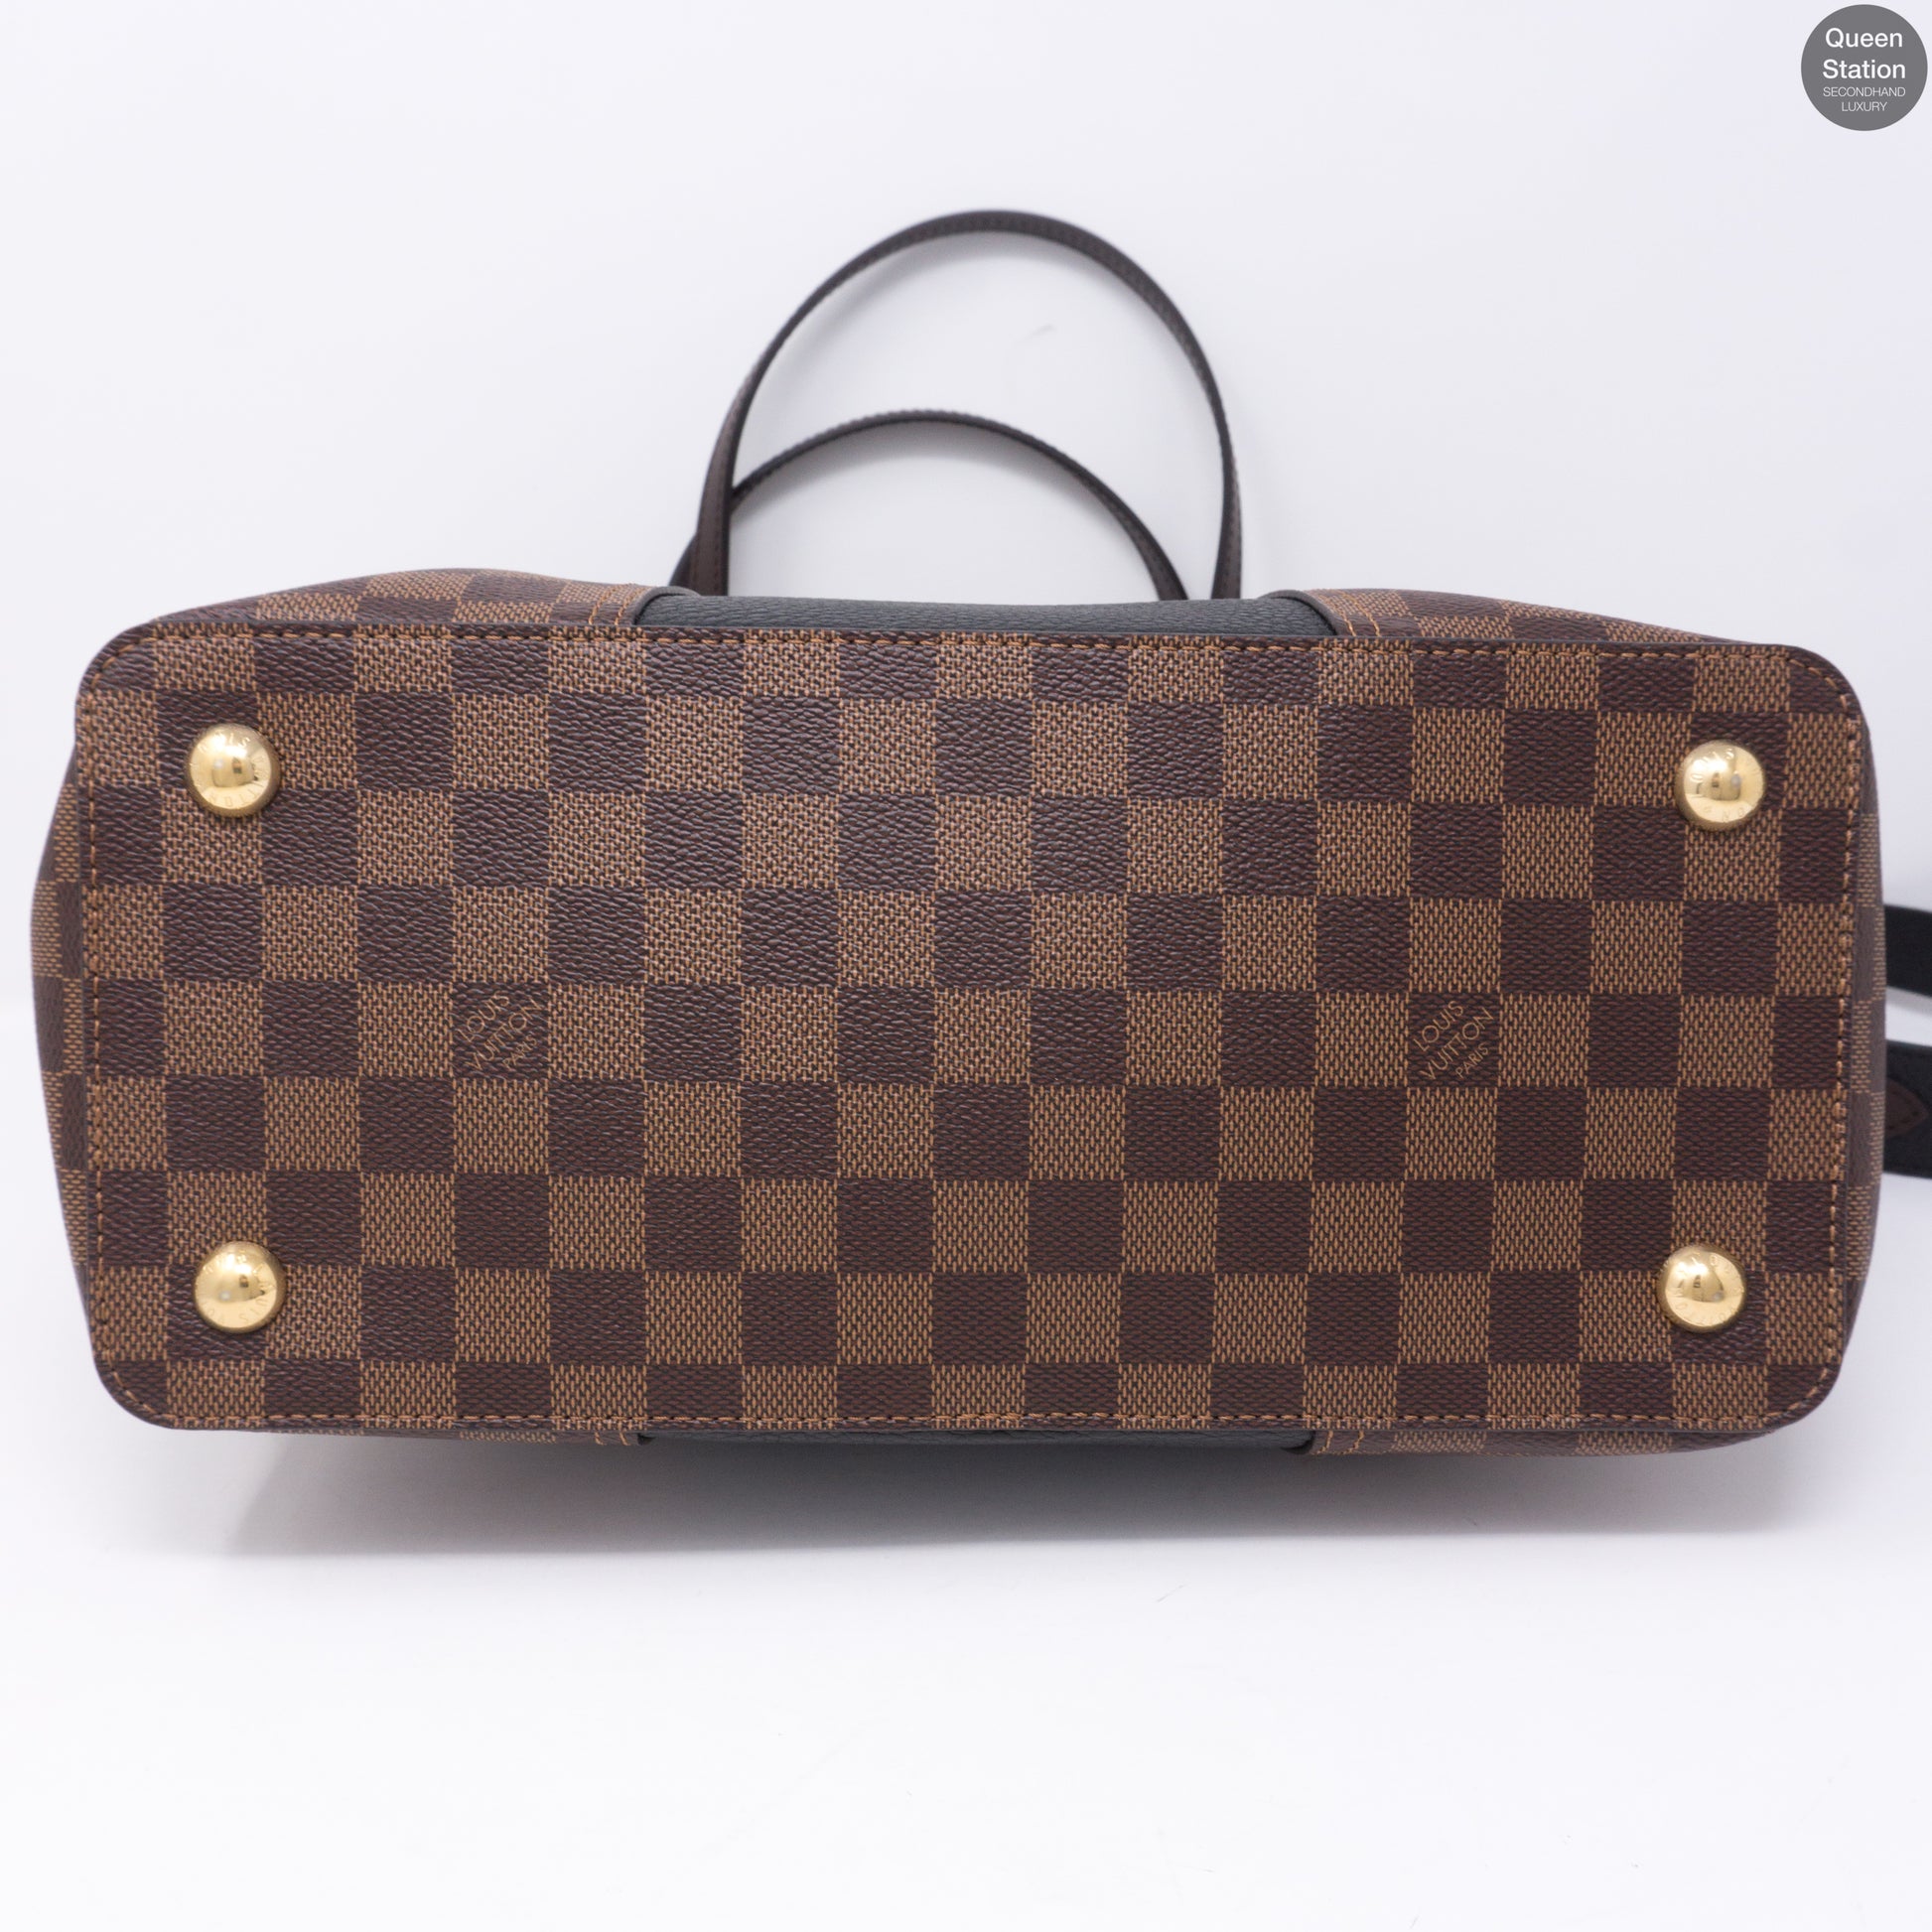 Louis Vuitton Damier Ebene Jersey Tote w/ Strap - Brown Totes, Handbags -  LOU778510